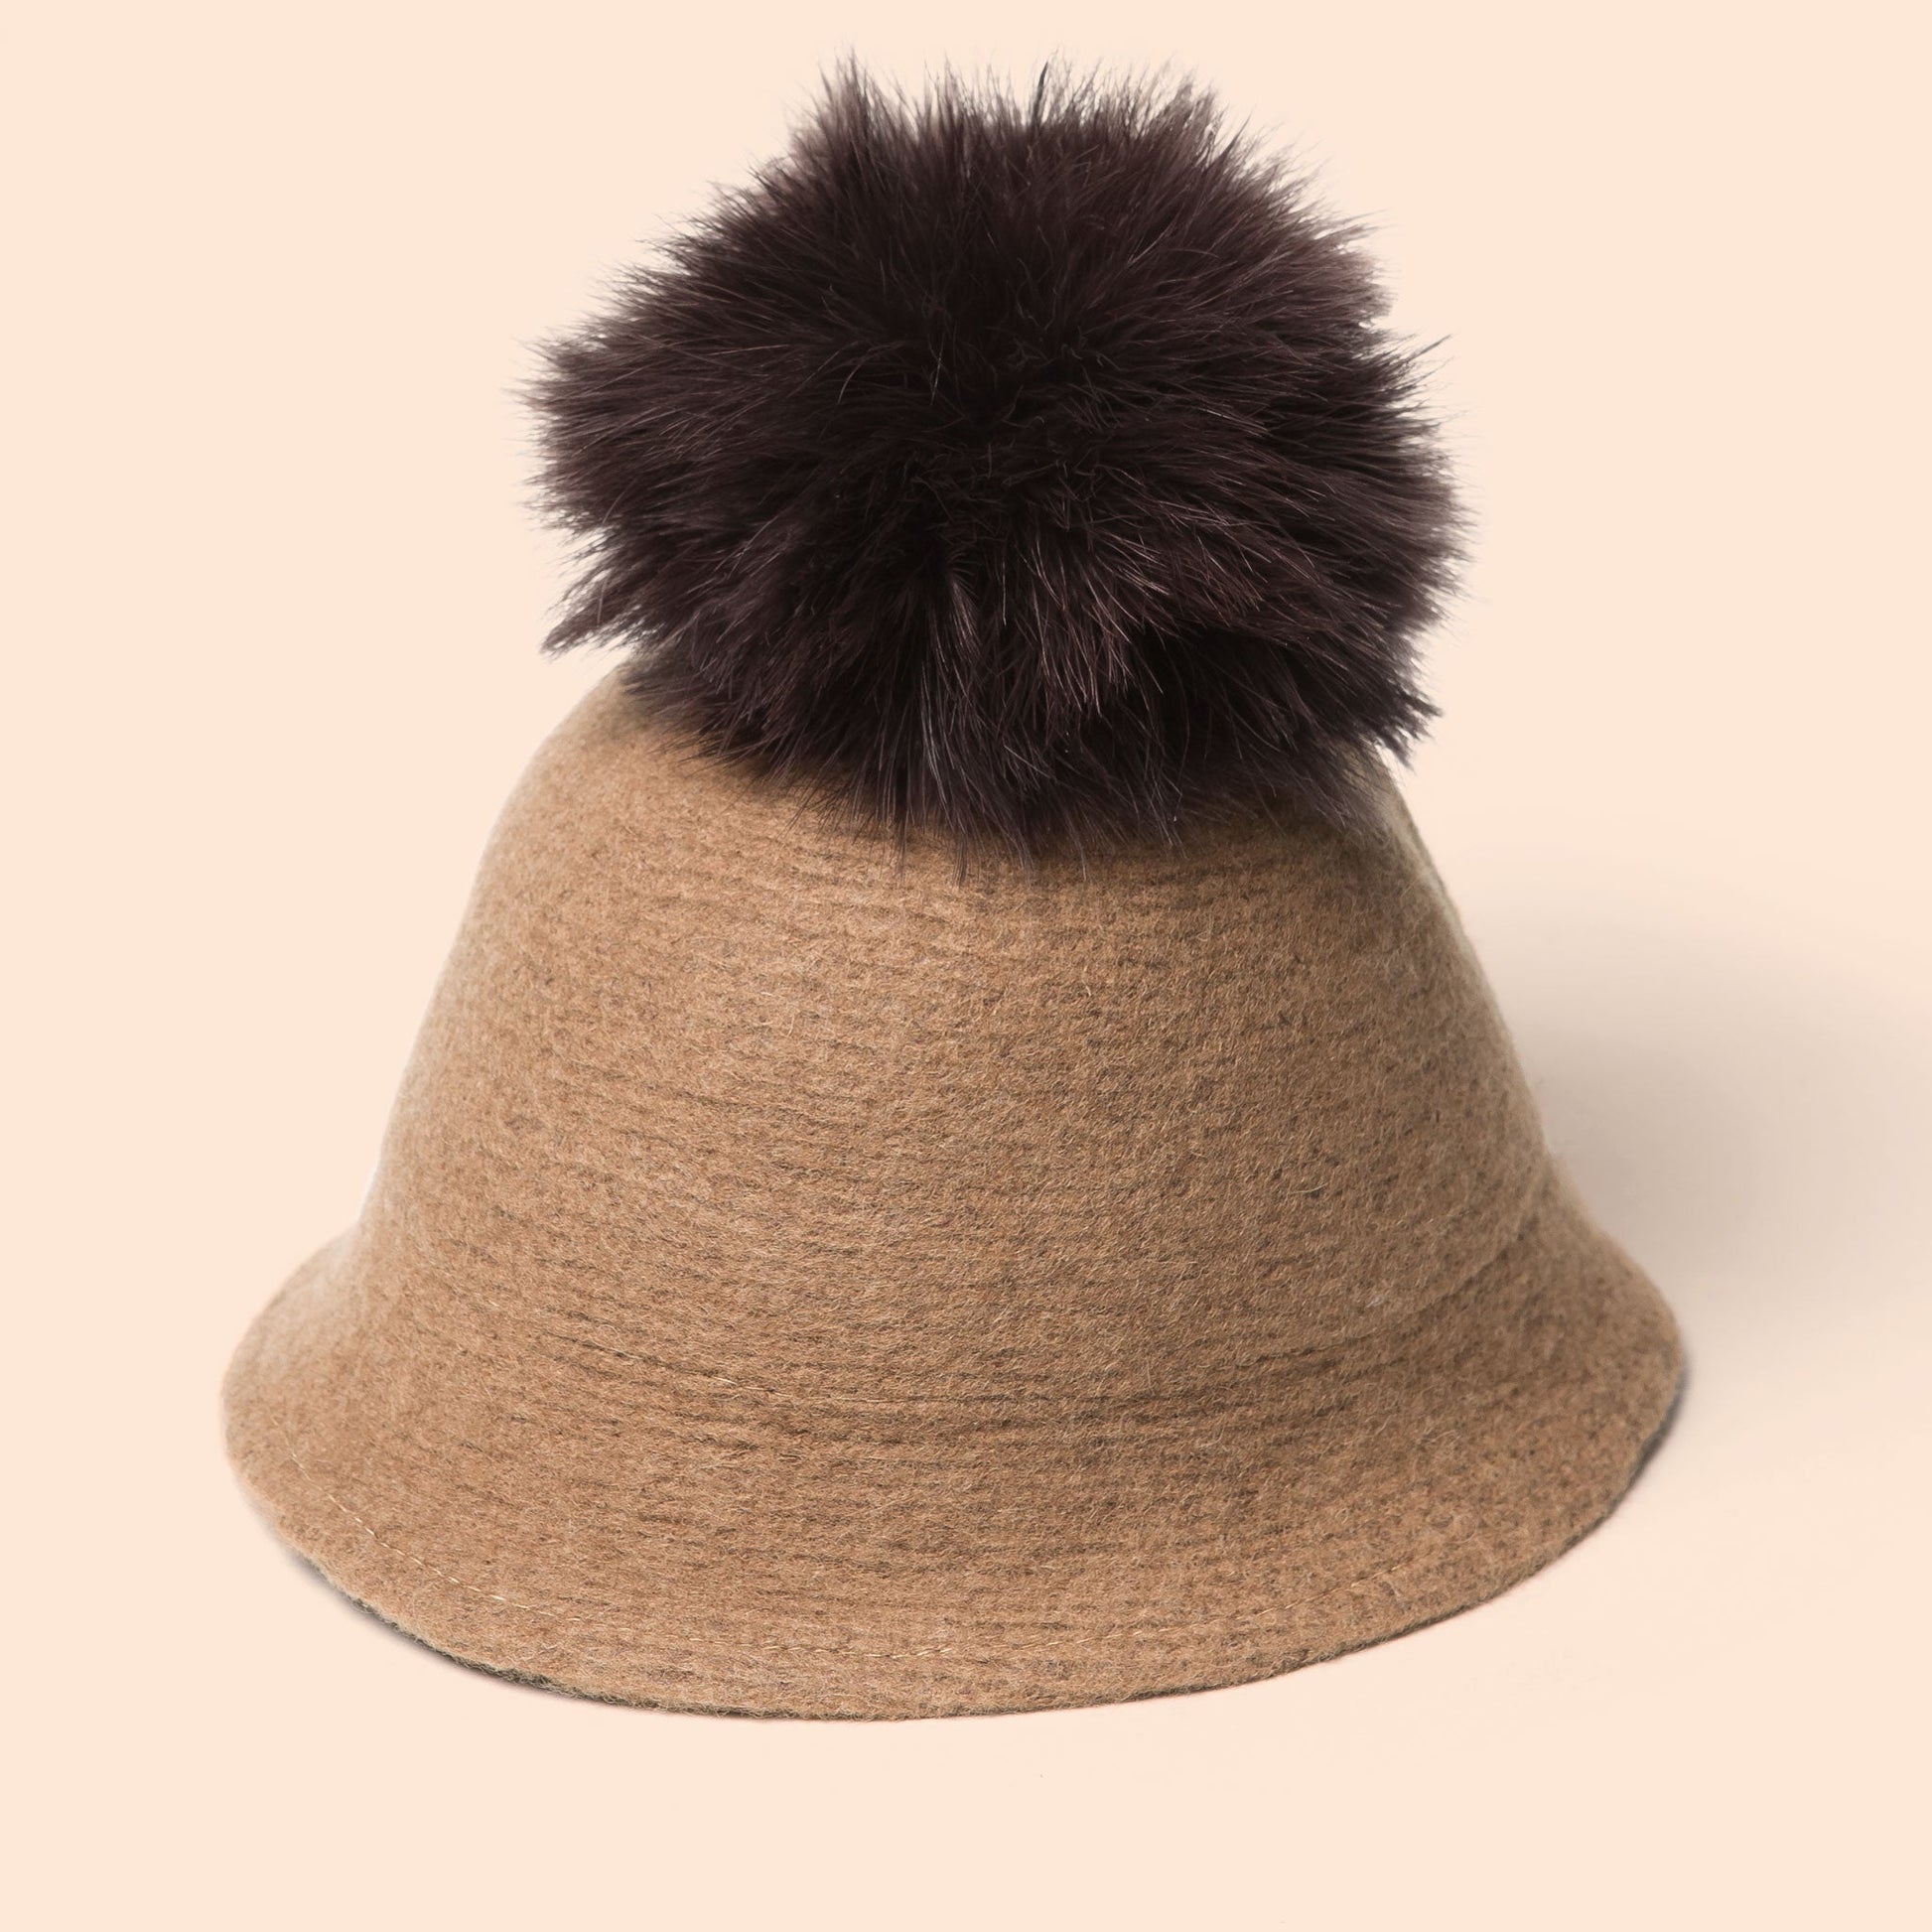 Pompom Wool Cloche Hat (Tan)